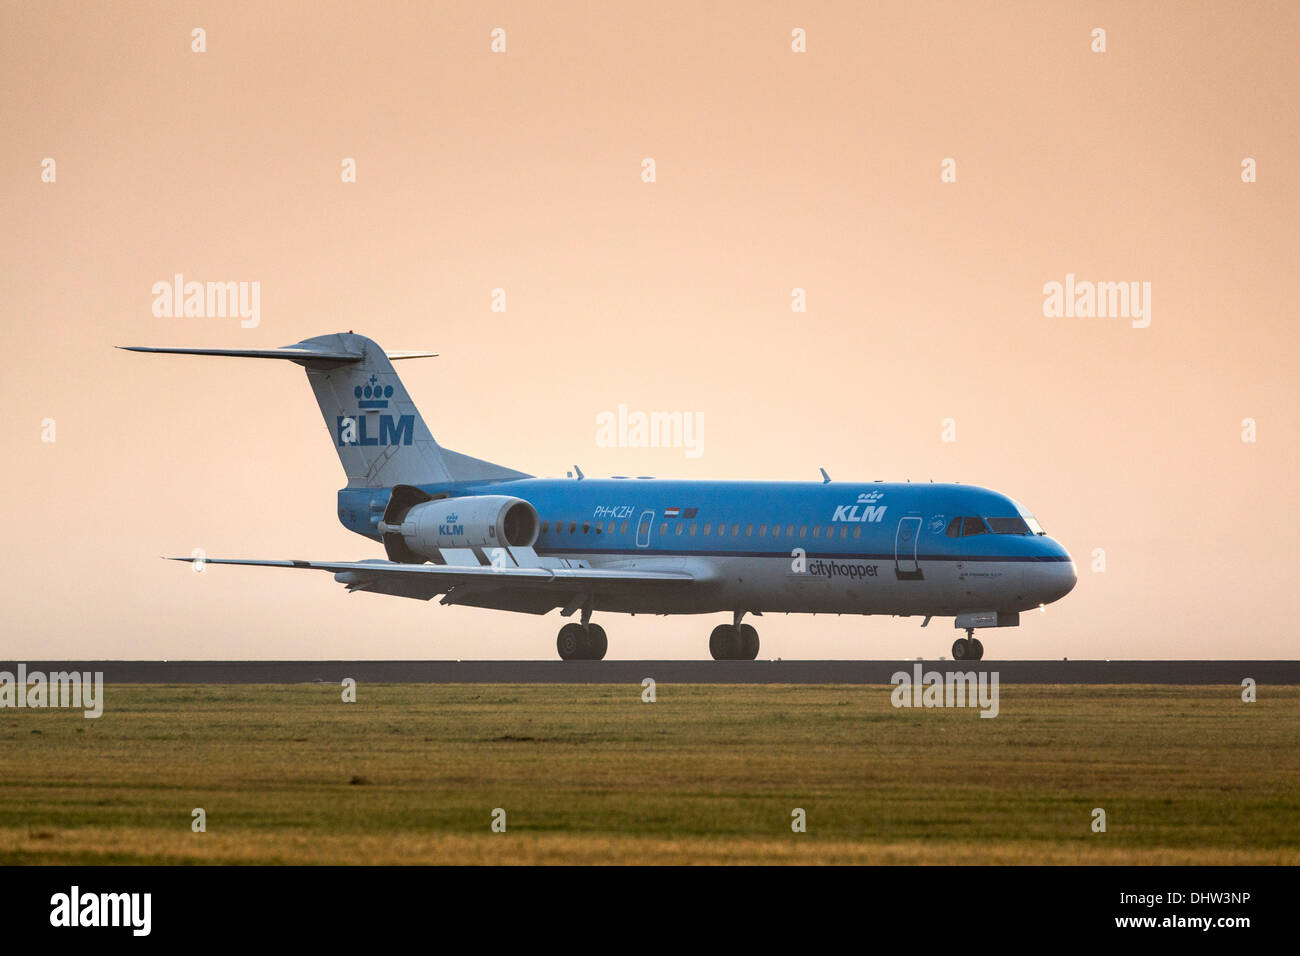 Niederlande, Vijfhuizen, Amsterdam Schiphol Flughafen. Start-und Landebahn Polderbaan genannt. KLM Flugzeug Landung. Sunrise Stockfoto